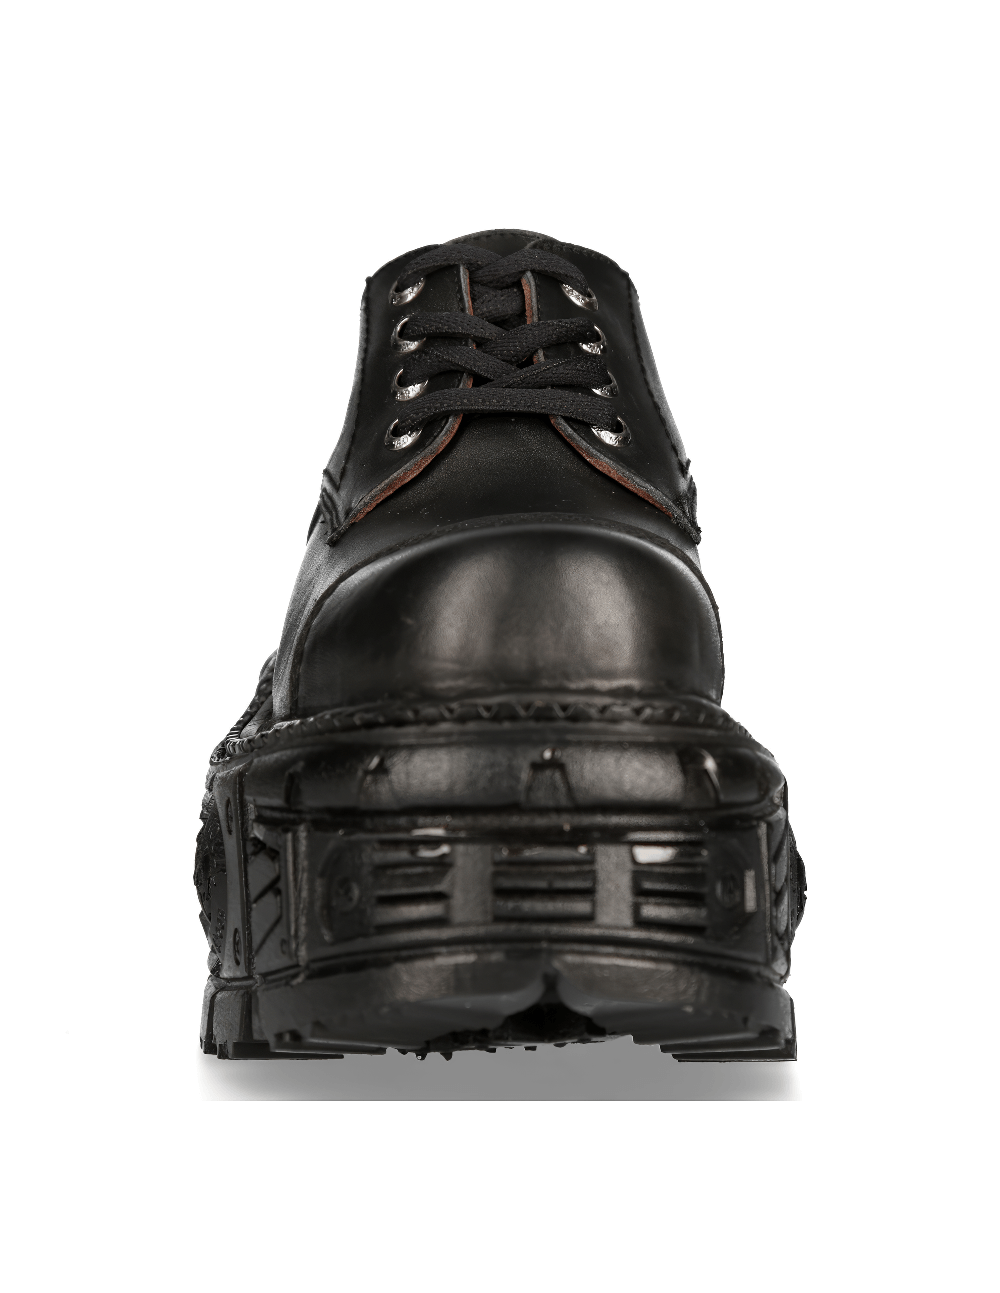 NEW ROCK Unisex Rugged Black Platform Ankle Shoes